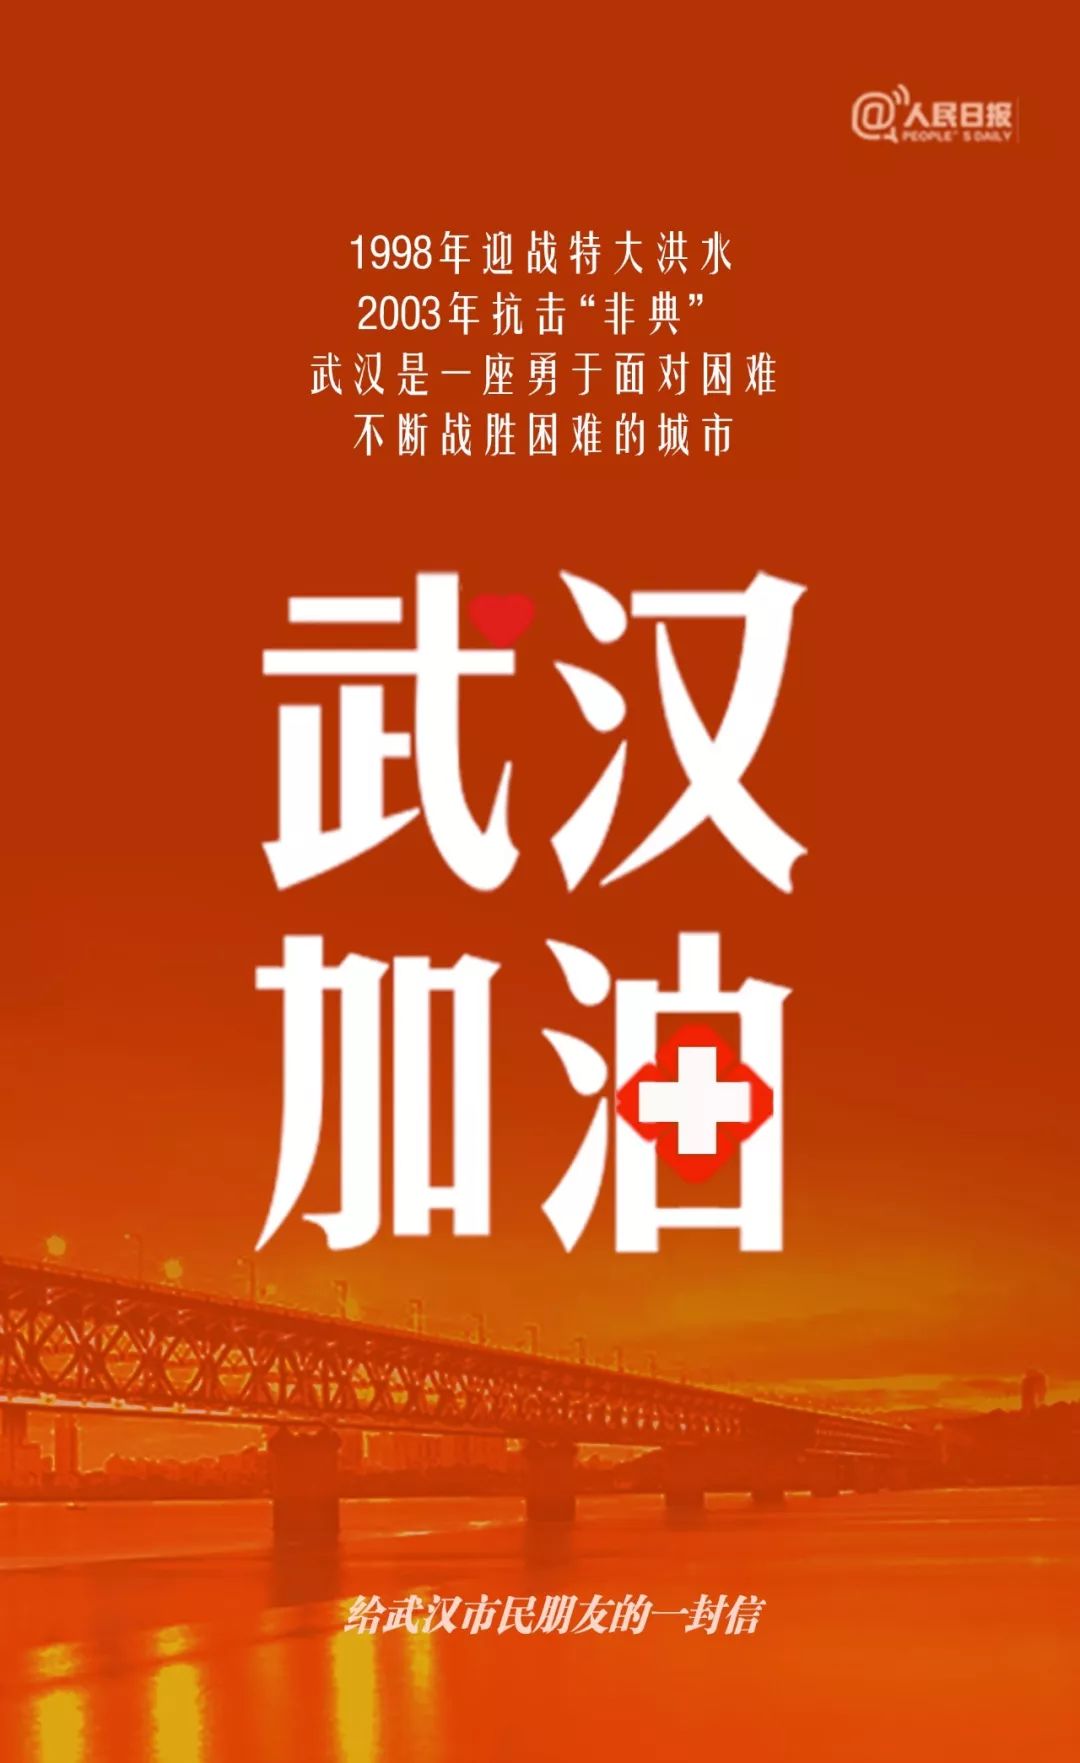 人民日报给武汉市民的一封信：武汉是勇于面对困难的城市